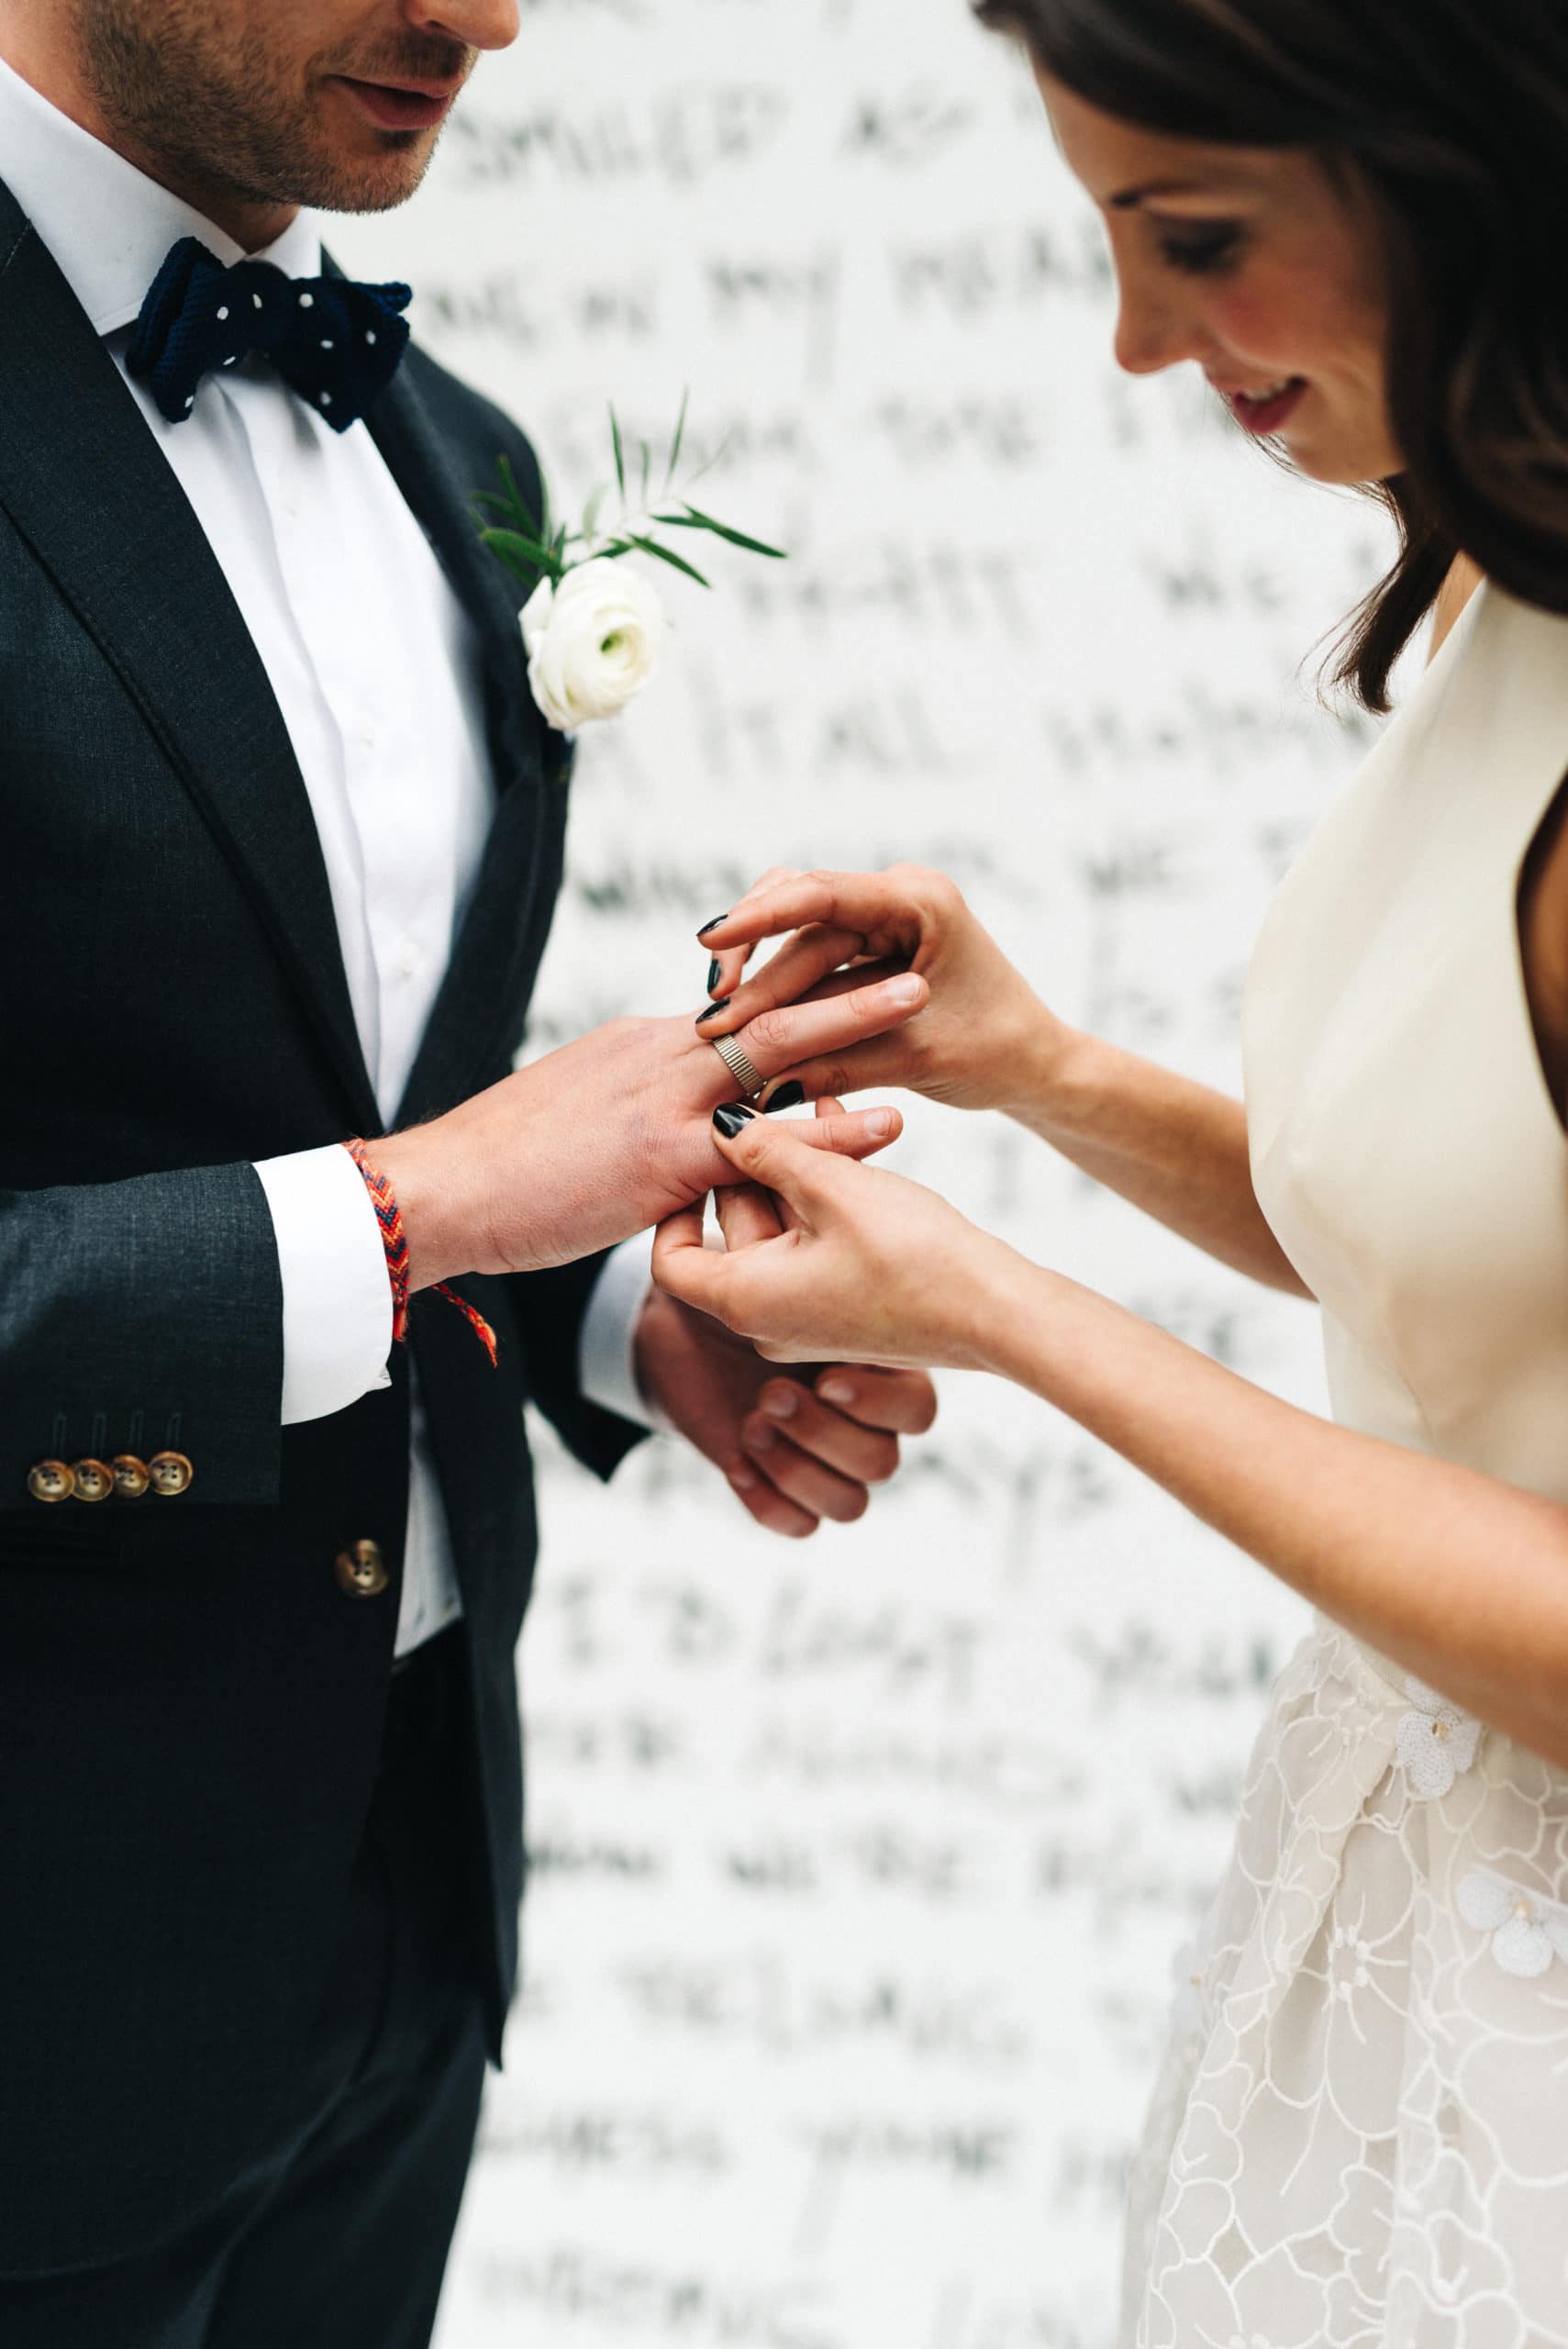 Oogst trouwringen. Blog alles over huwelijksjubilea